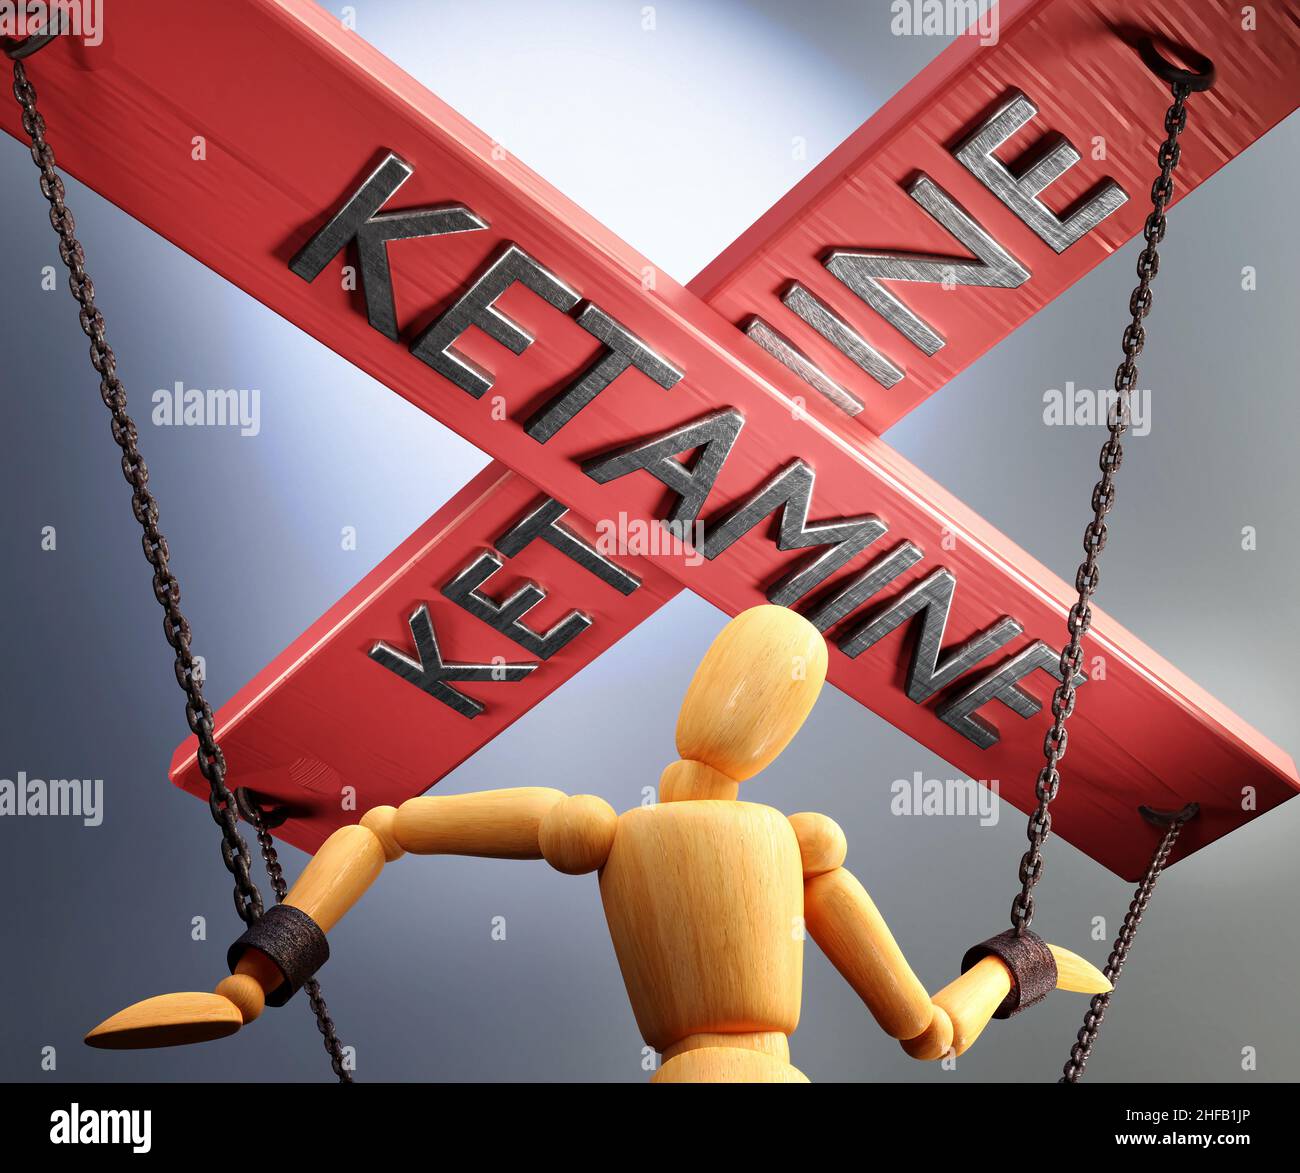 Ketamin Kontrolle, Macht, Einfluss und Manipulation symbolisiert durch Steuerleiste mit dem Wort Ketamin, das die Saiten (Ketten) einer Holzpuppe zieht, 3D i Stockfoto